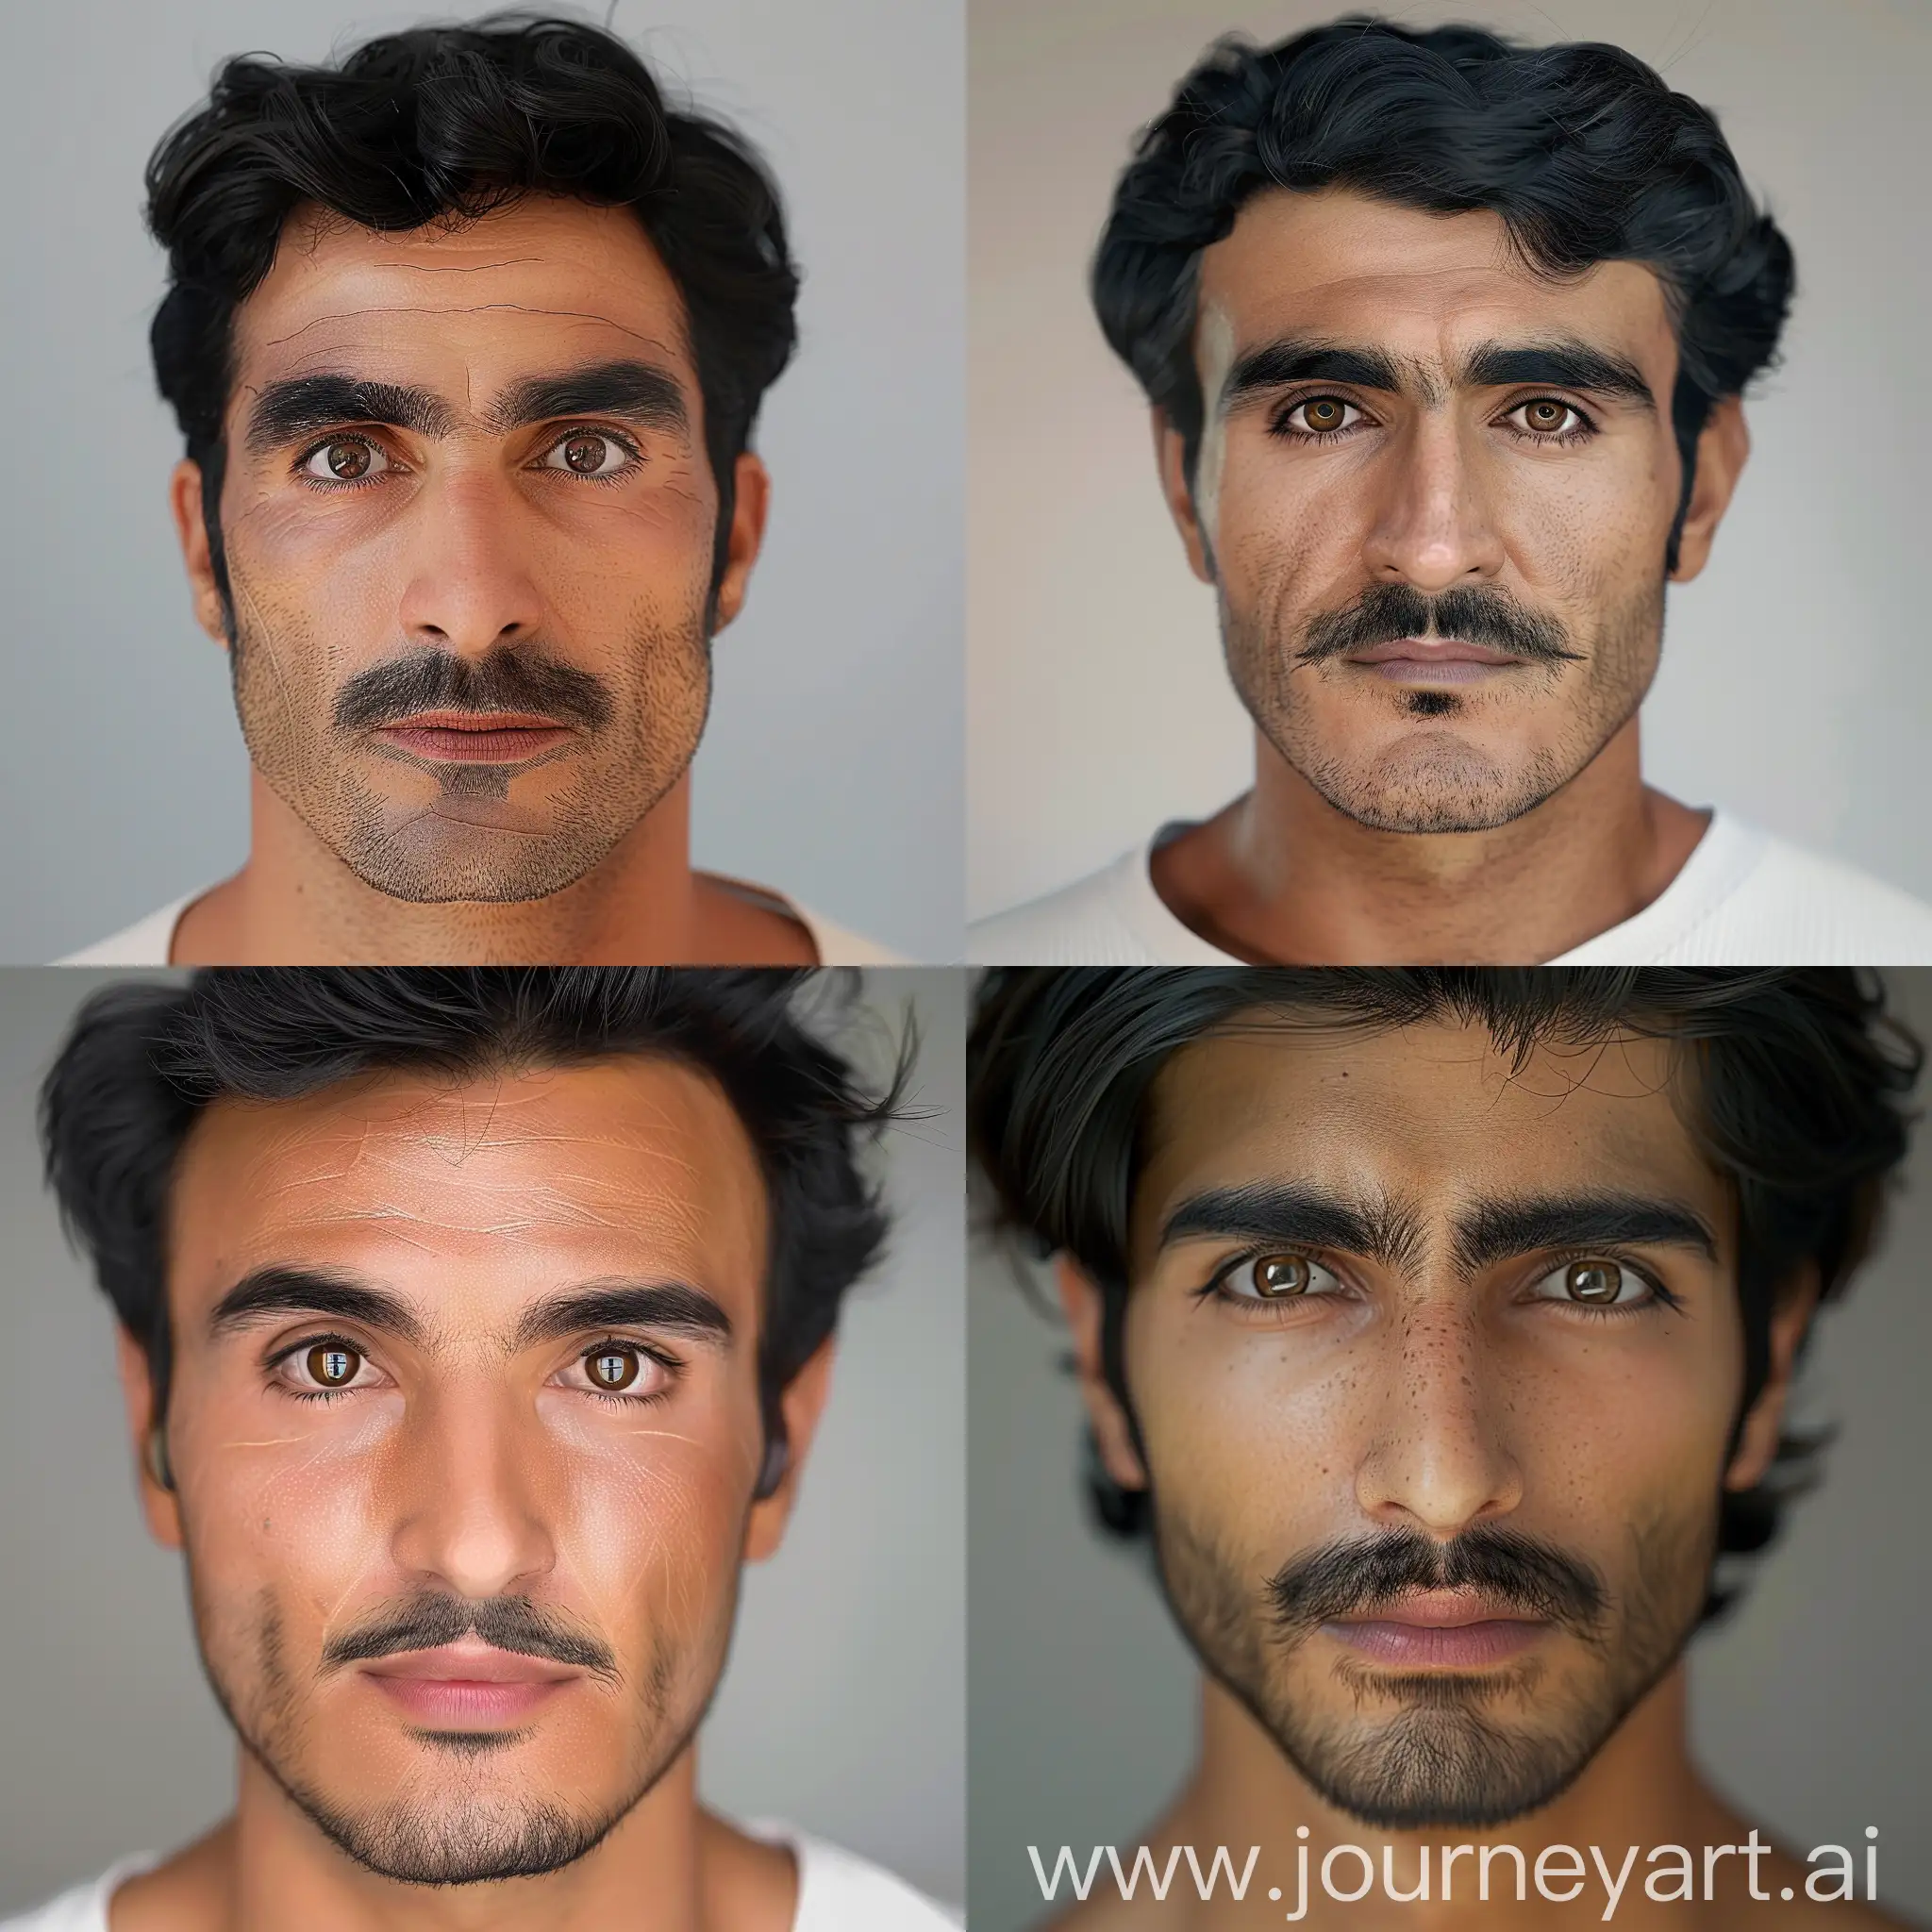 Ультра-реалистичное фото смуглого иранского парня с чёрными волосами, карими глазами и усами, который работает пластическим хирургом в Дубае